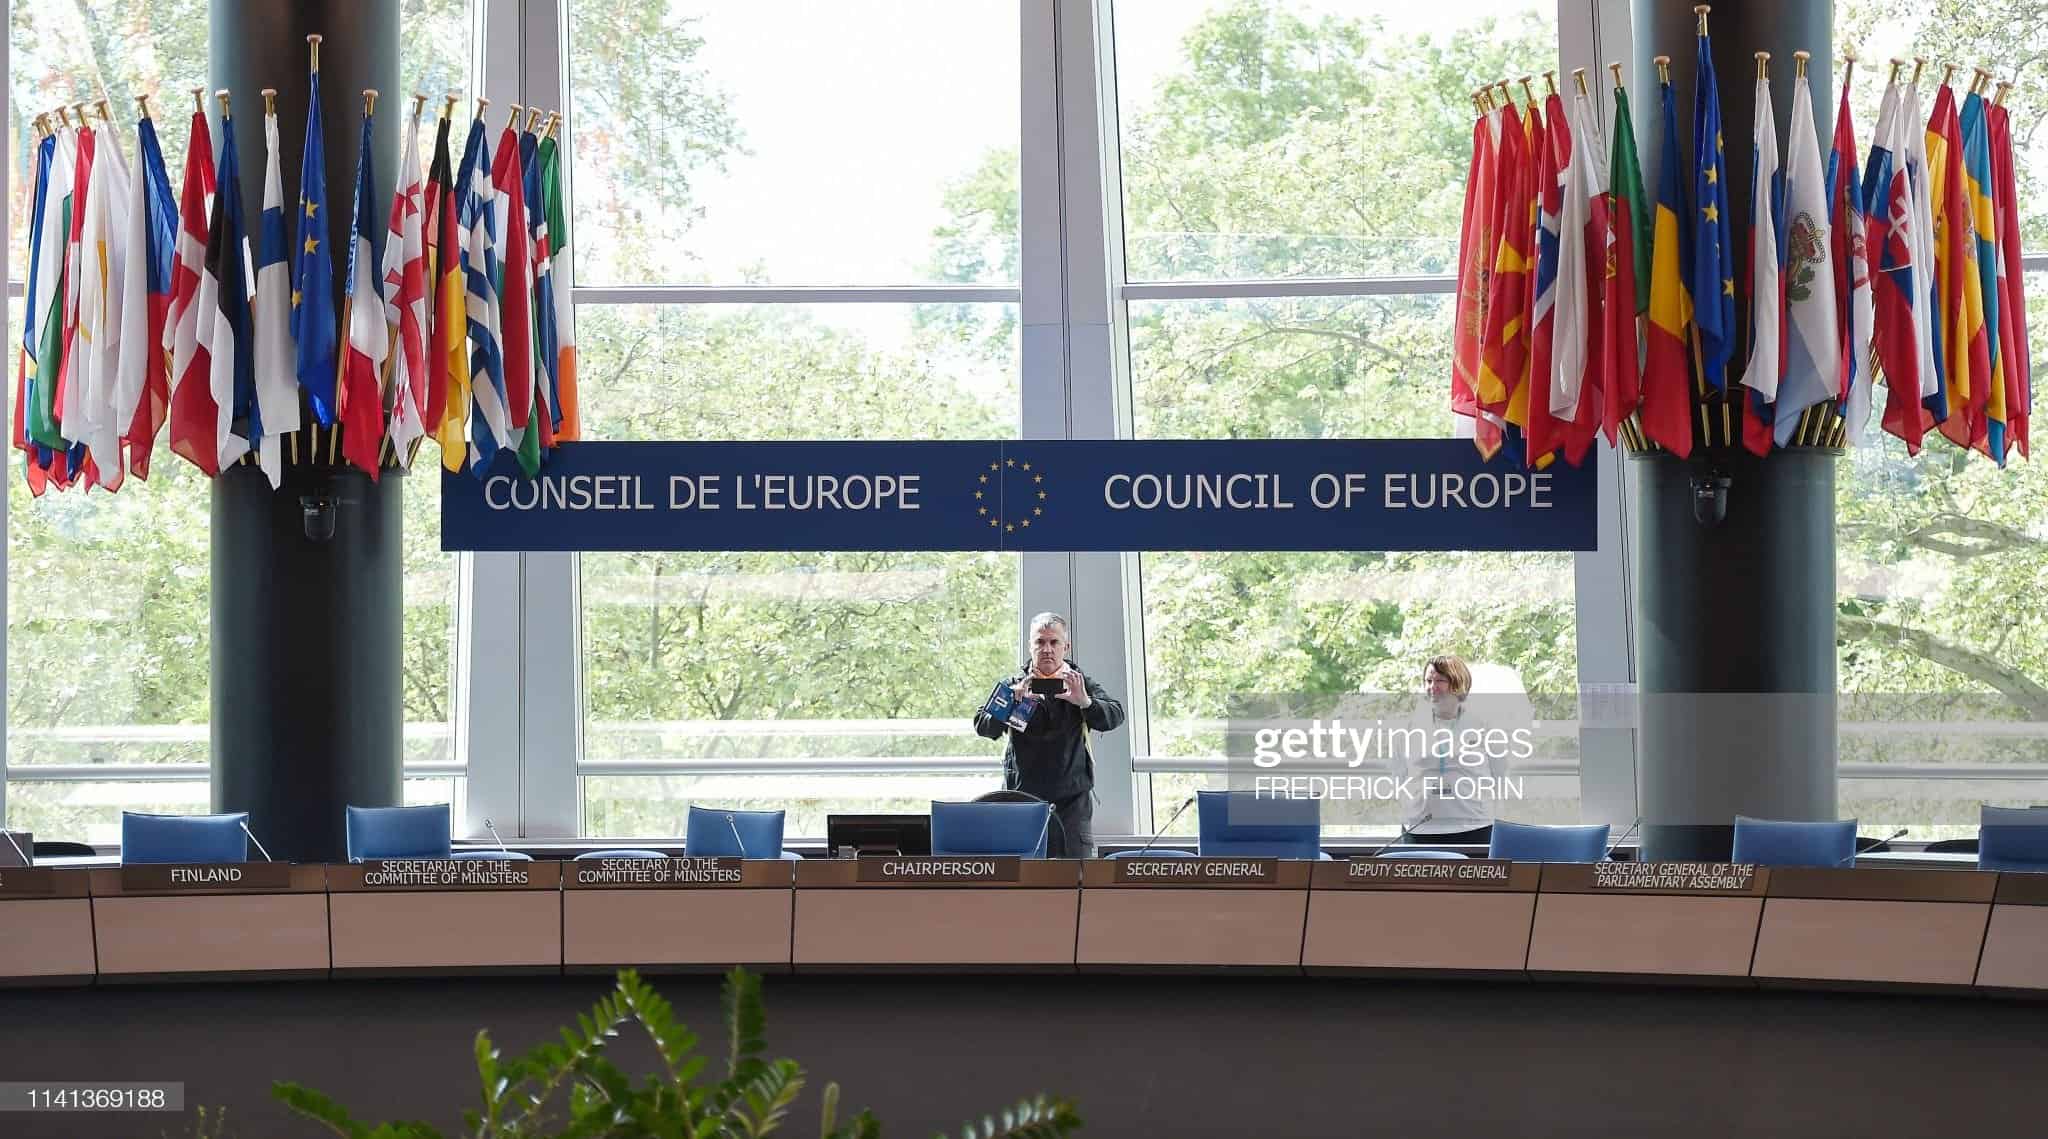 Nga chính thức rút khỏi Hội đồng châu Âu. Ảnh minh họa: Getty